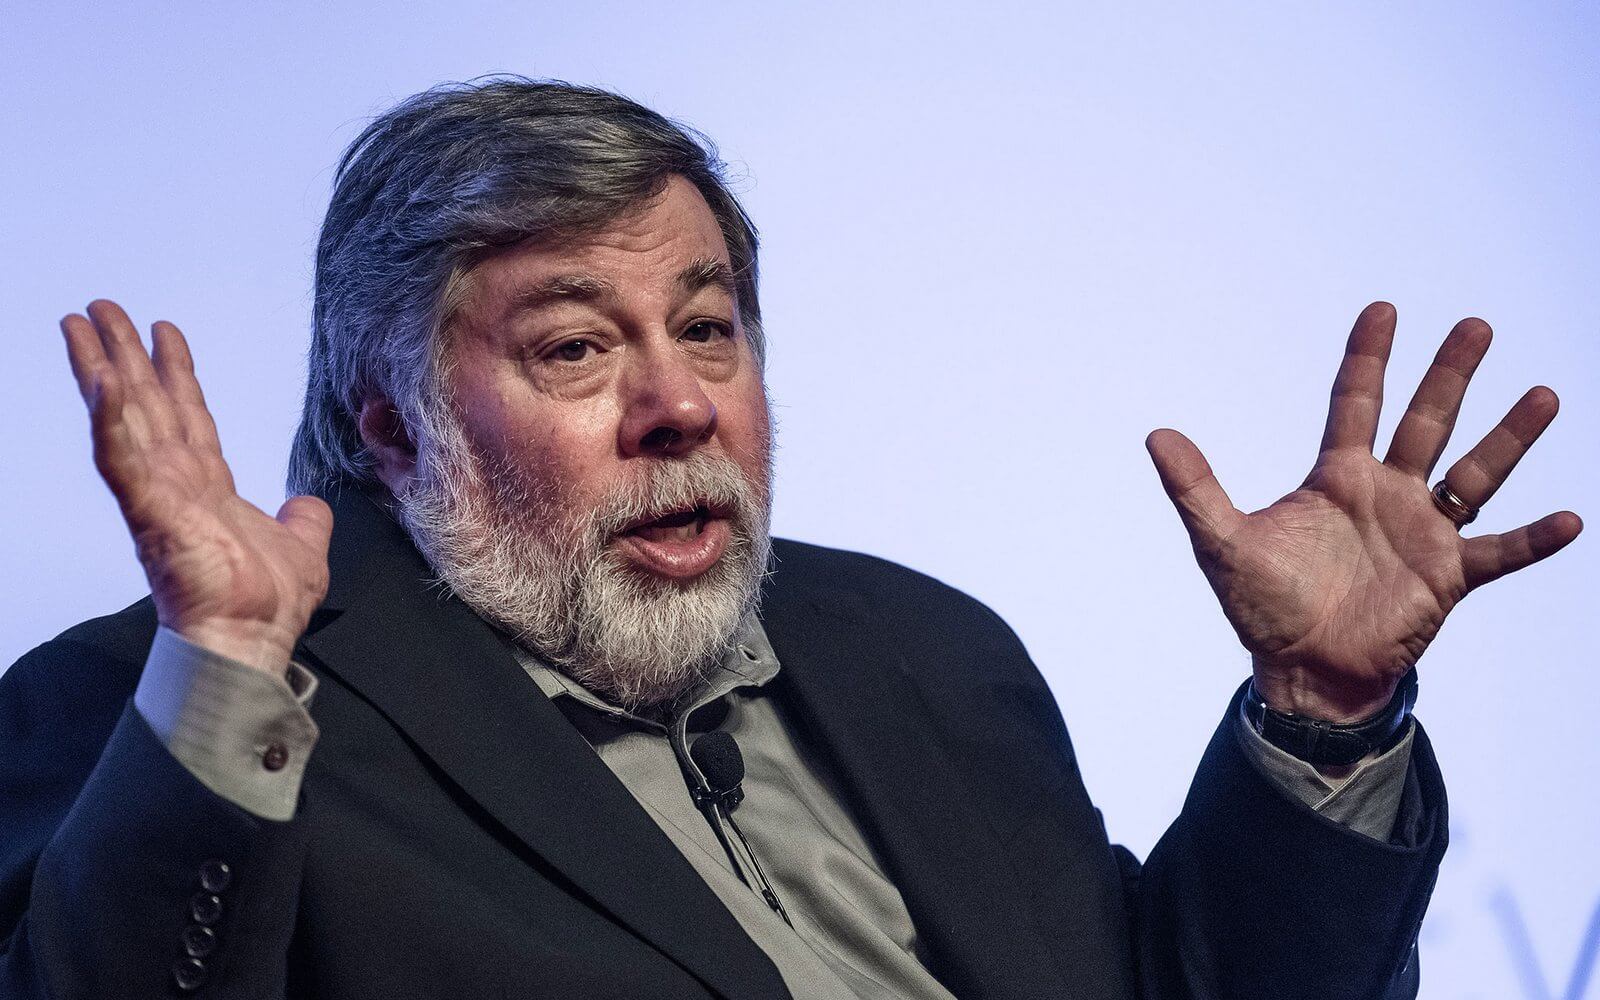 "Ich sehe wirklich keinen Unterschied": Steve Wozniak kritisiert das neue iPhone 13